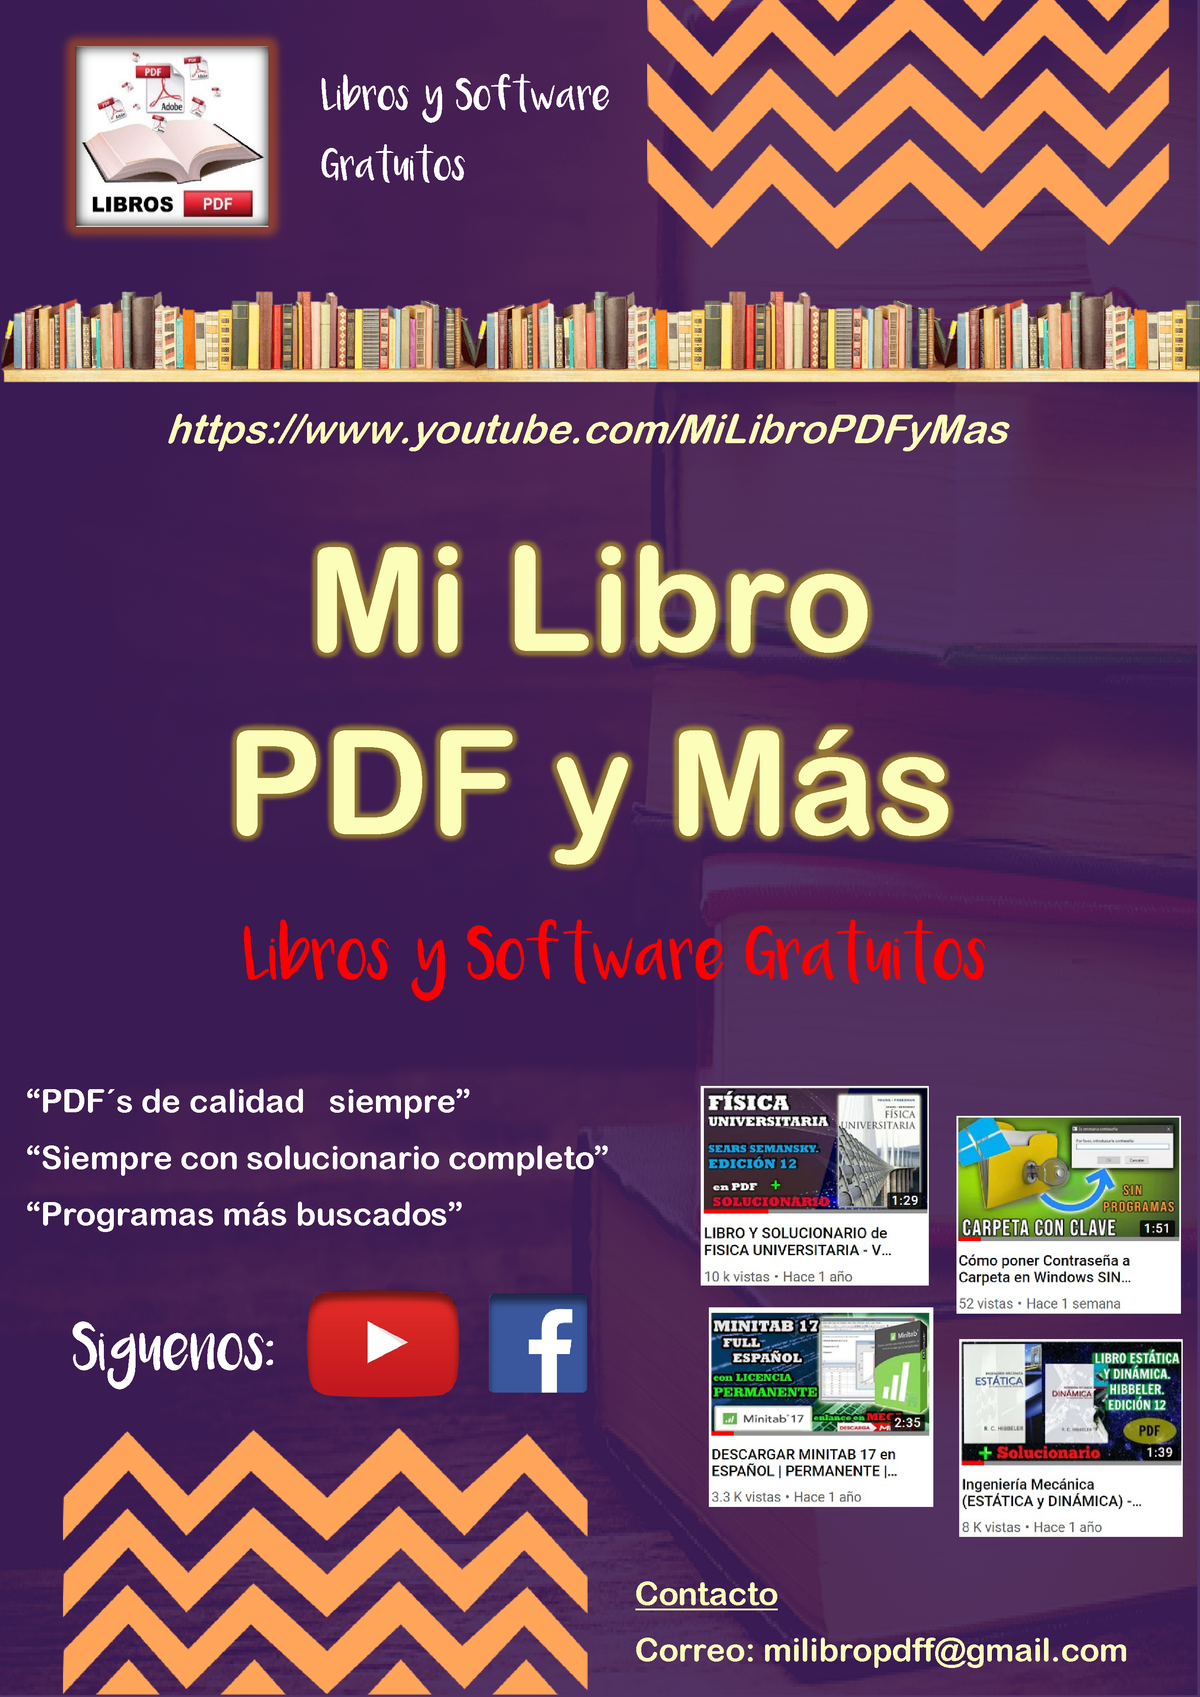 Solucionario Fisica Universitario Vol 2 Libros Software Gratuitos Mi Libro Pdf Studocu